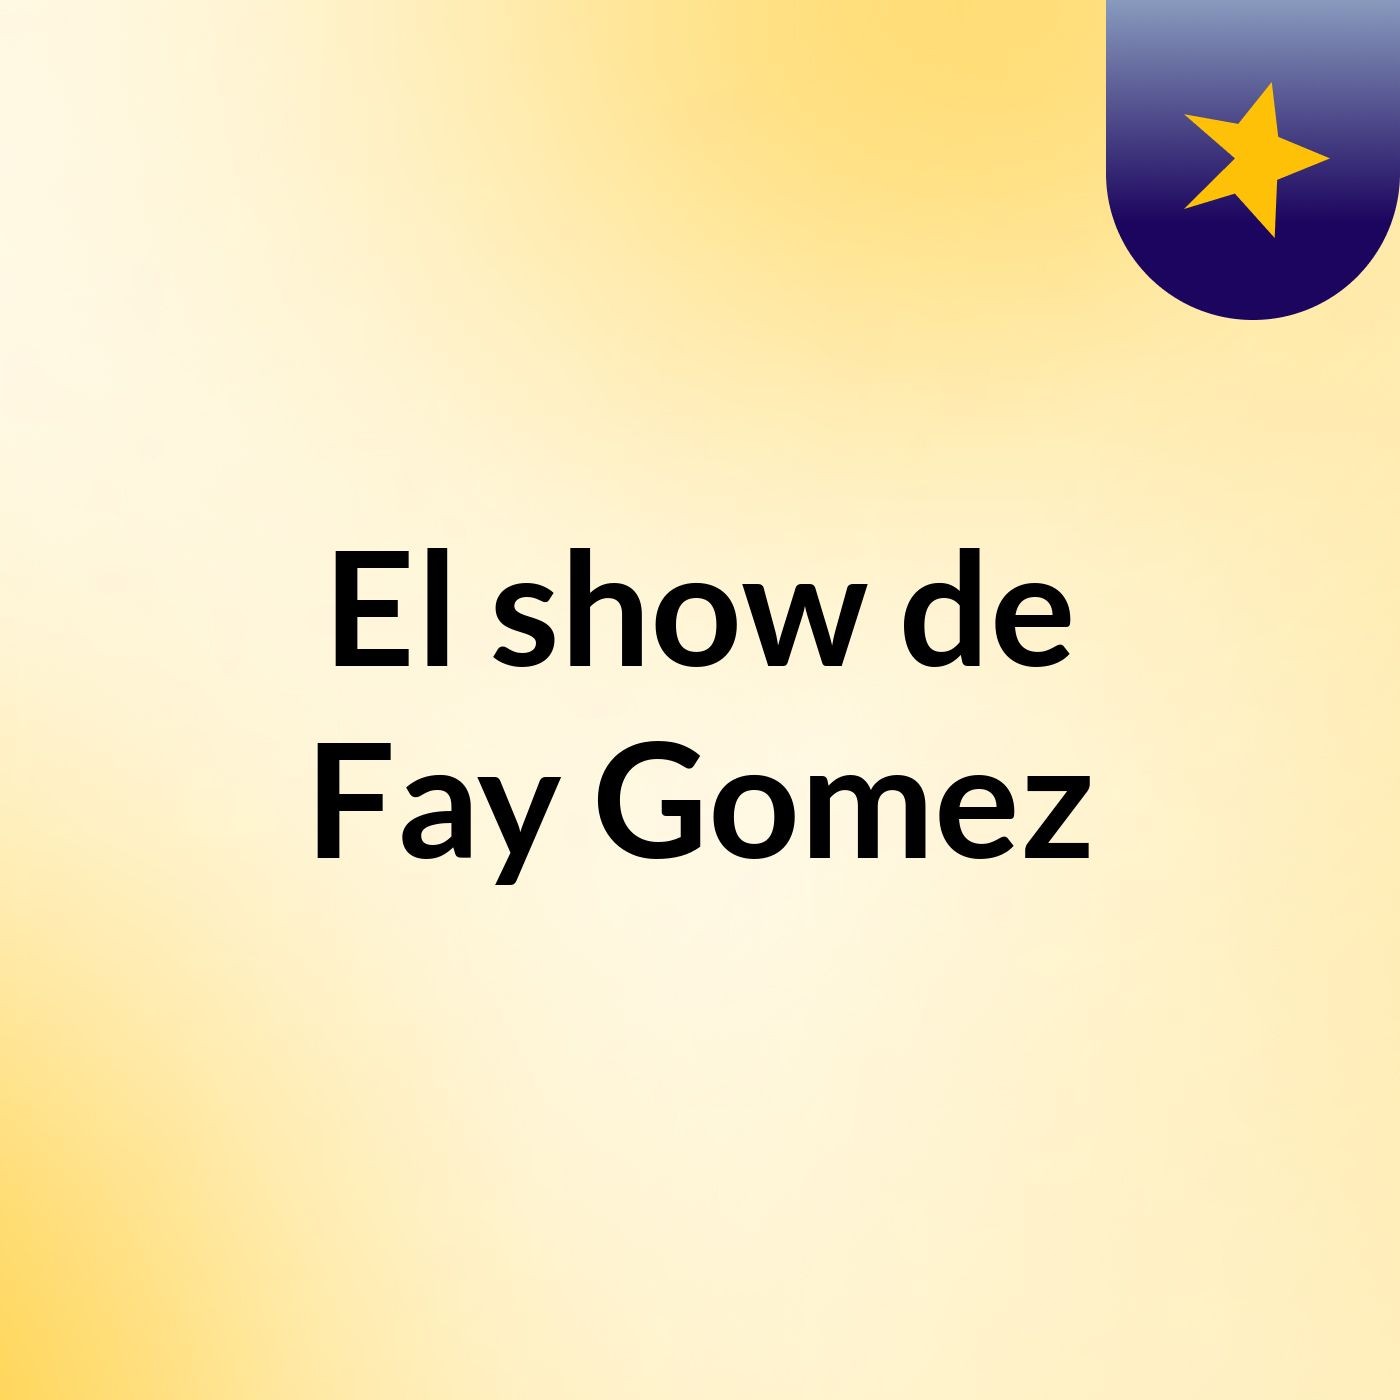 El show de Fay Gomez